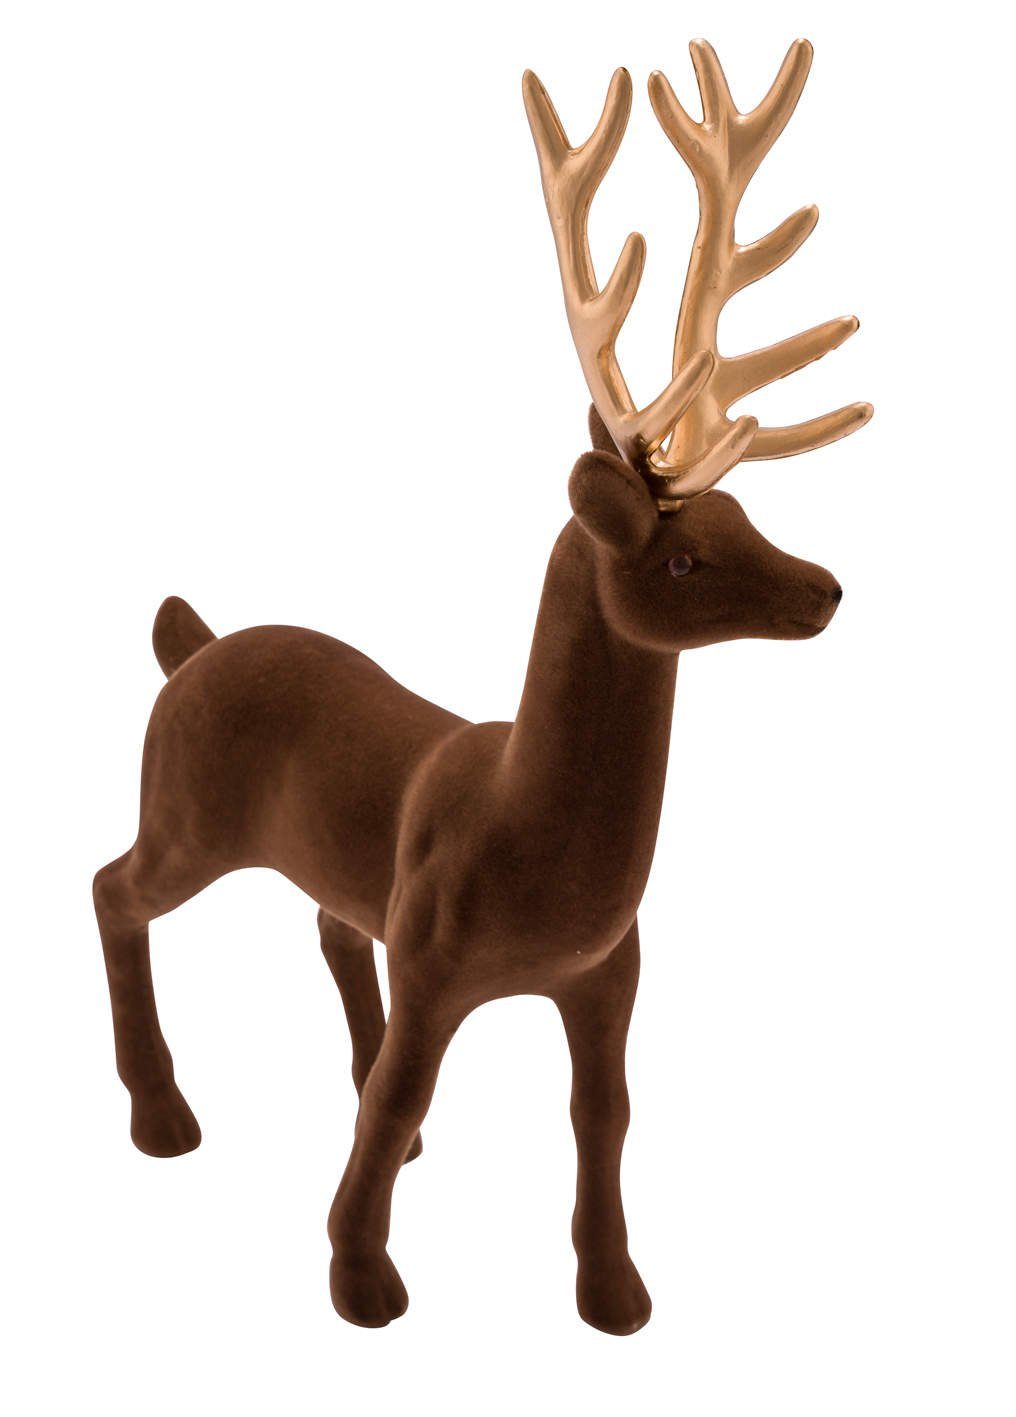 Gehlmann Weihnachtsfigur Hirsch, Samt, verschiedene Farben und Größen erhältlich braun-gold